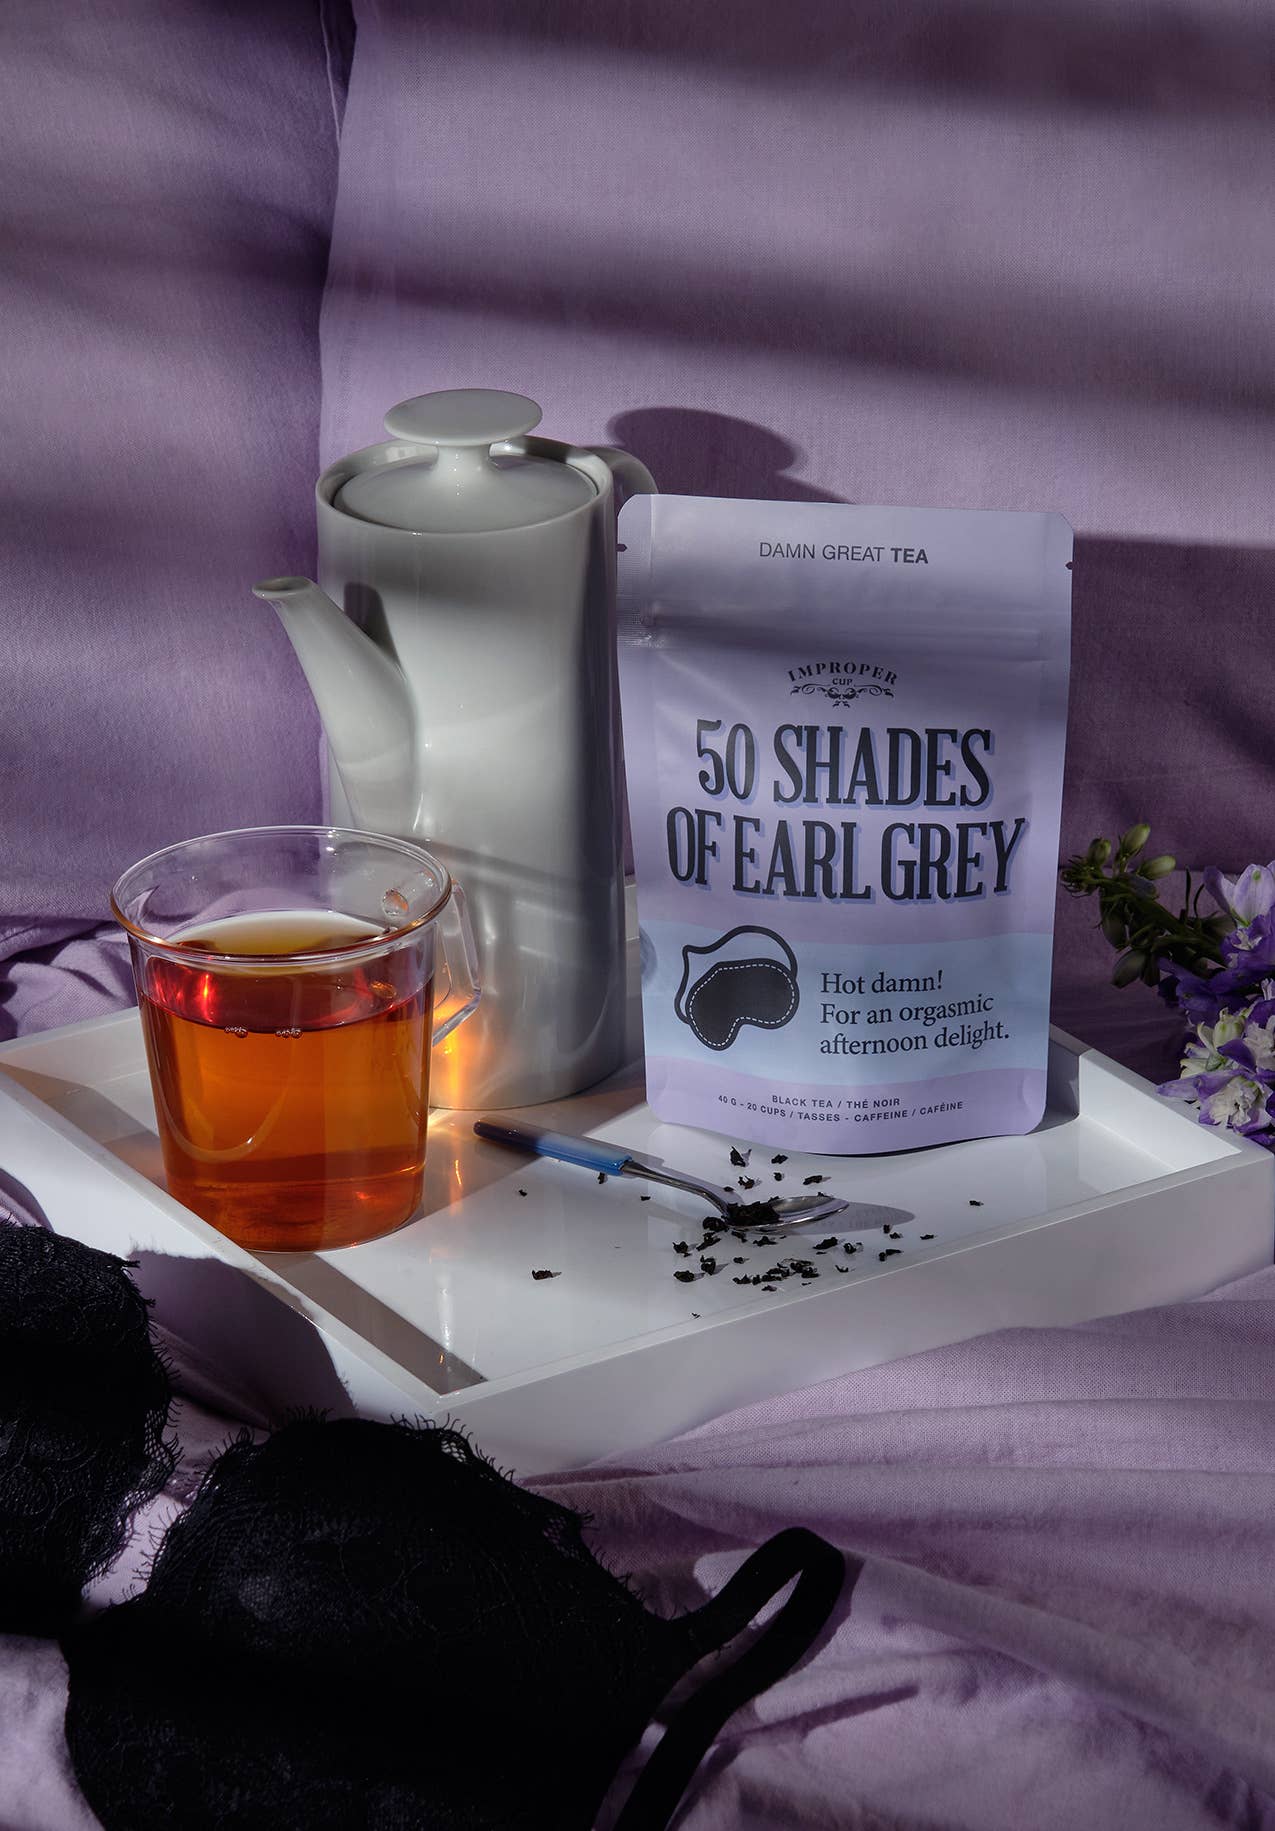 50 Shades of Earl Grey tea